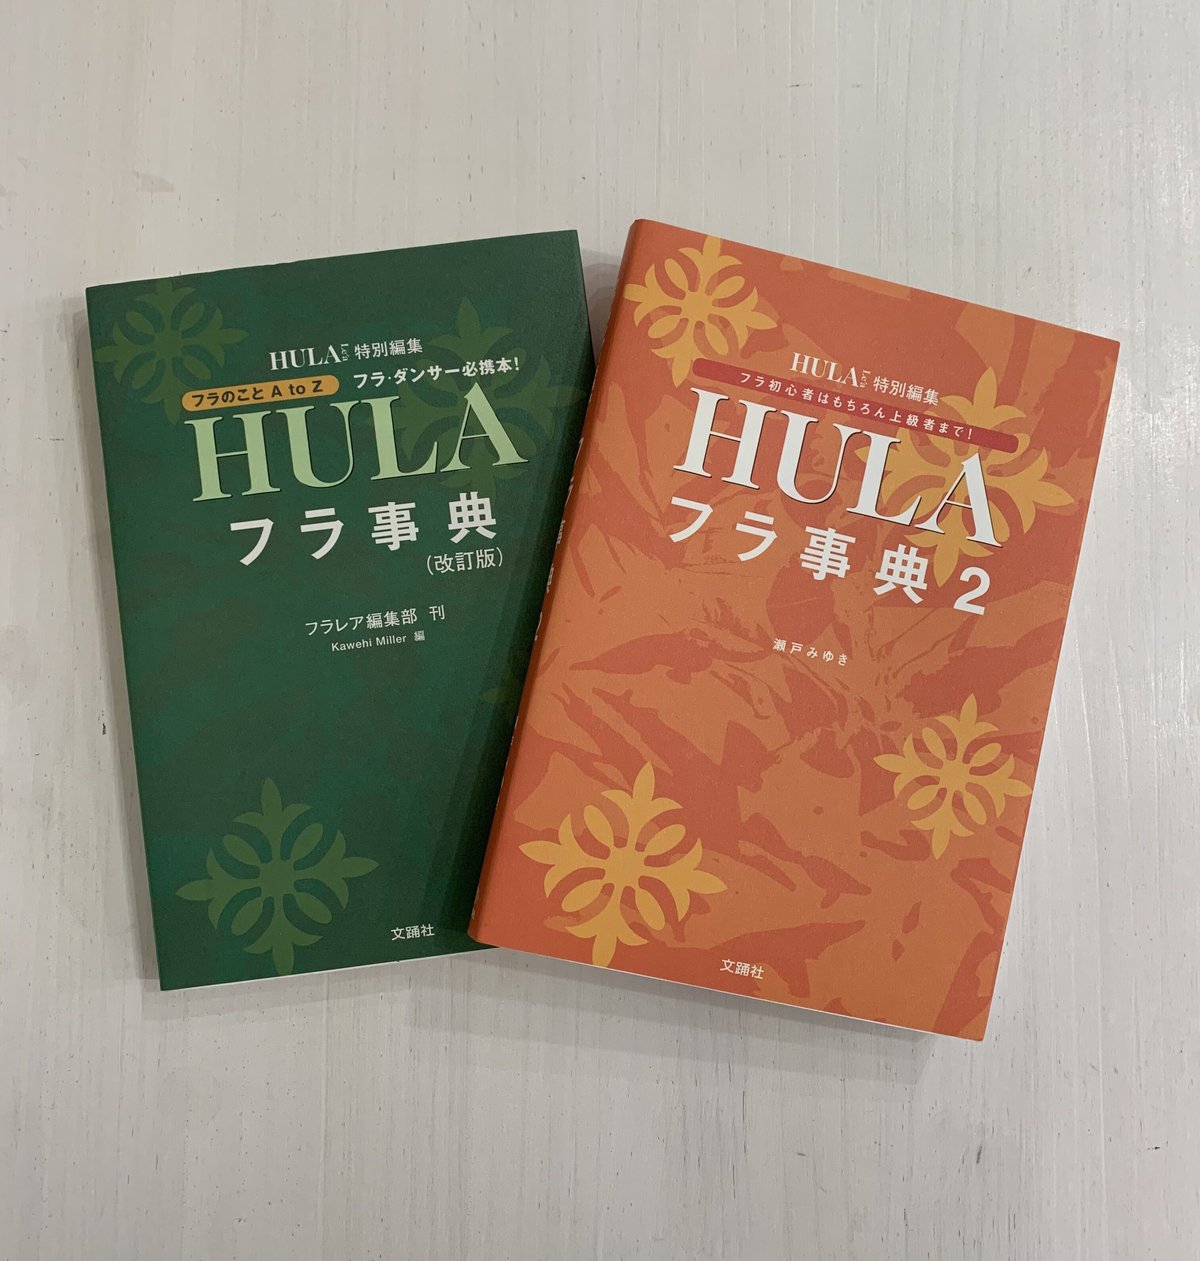 フラ HULA フラ事典2 フラガール ハワイ本 book